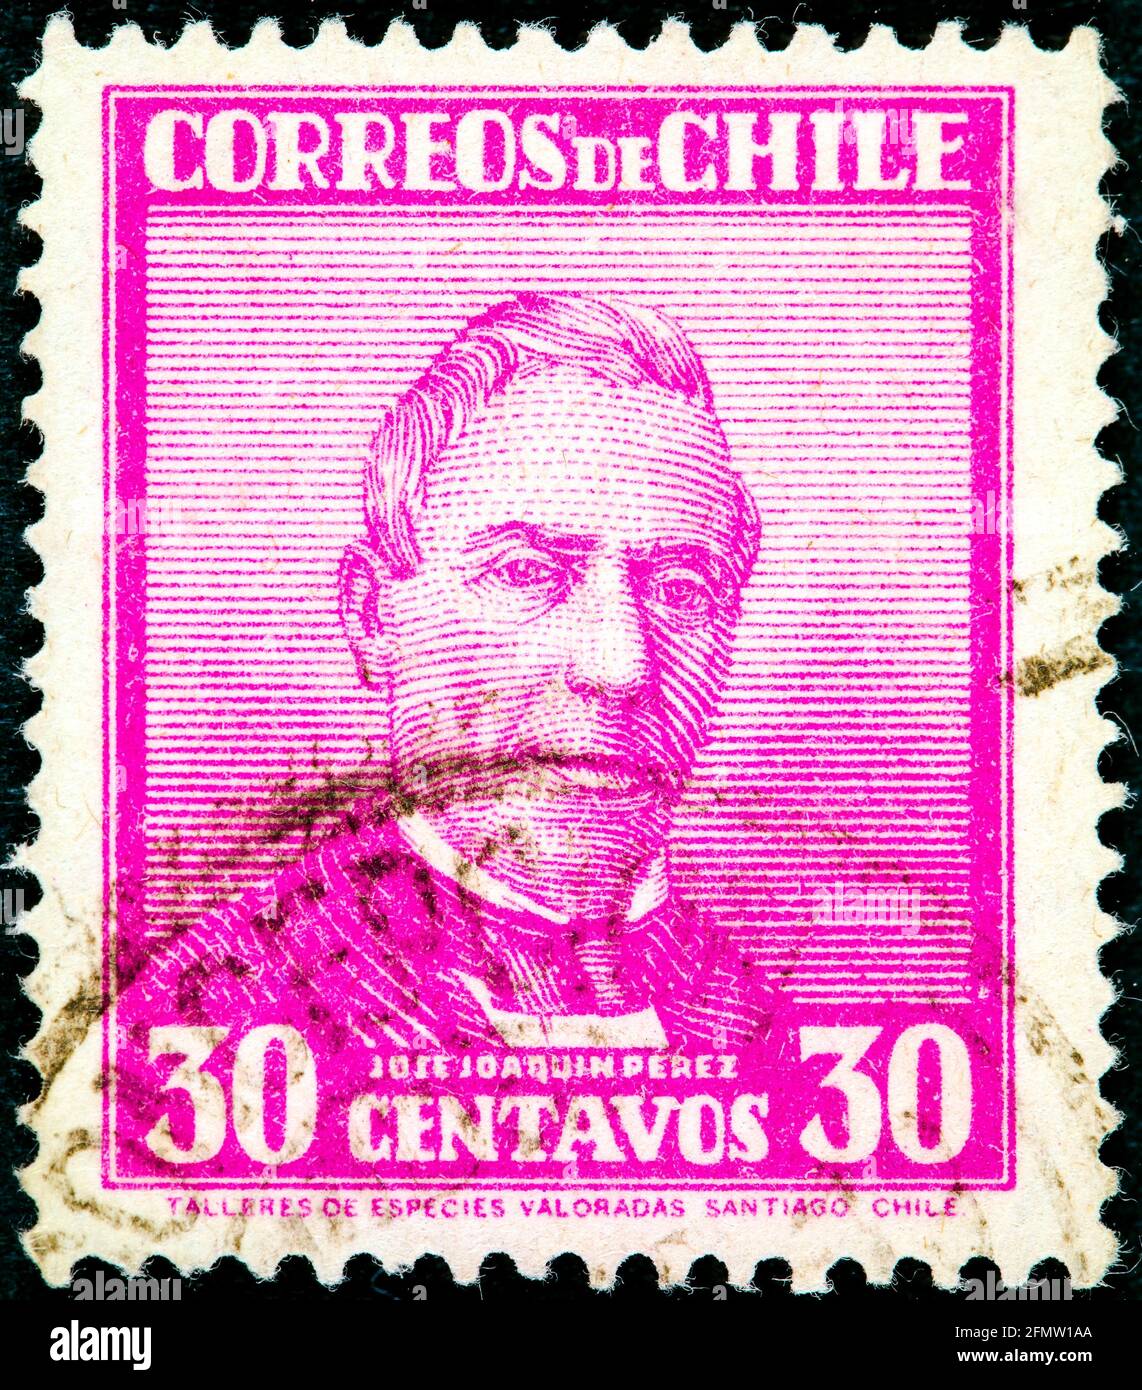 CHILI - VERS 1934: Un timbre imprimé au Chili montre José Joaquin Perez Mascayano, président du Chili, 1861 - 1871, vers 1934 Banque D'Images